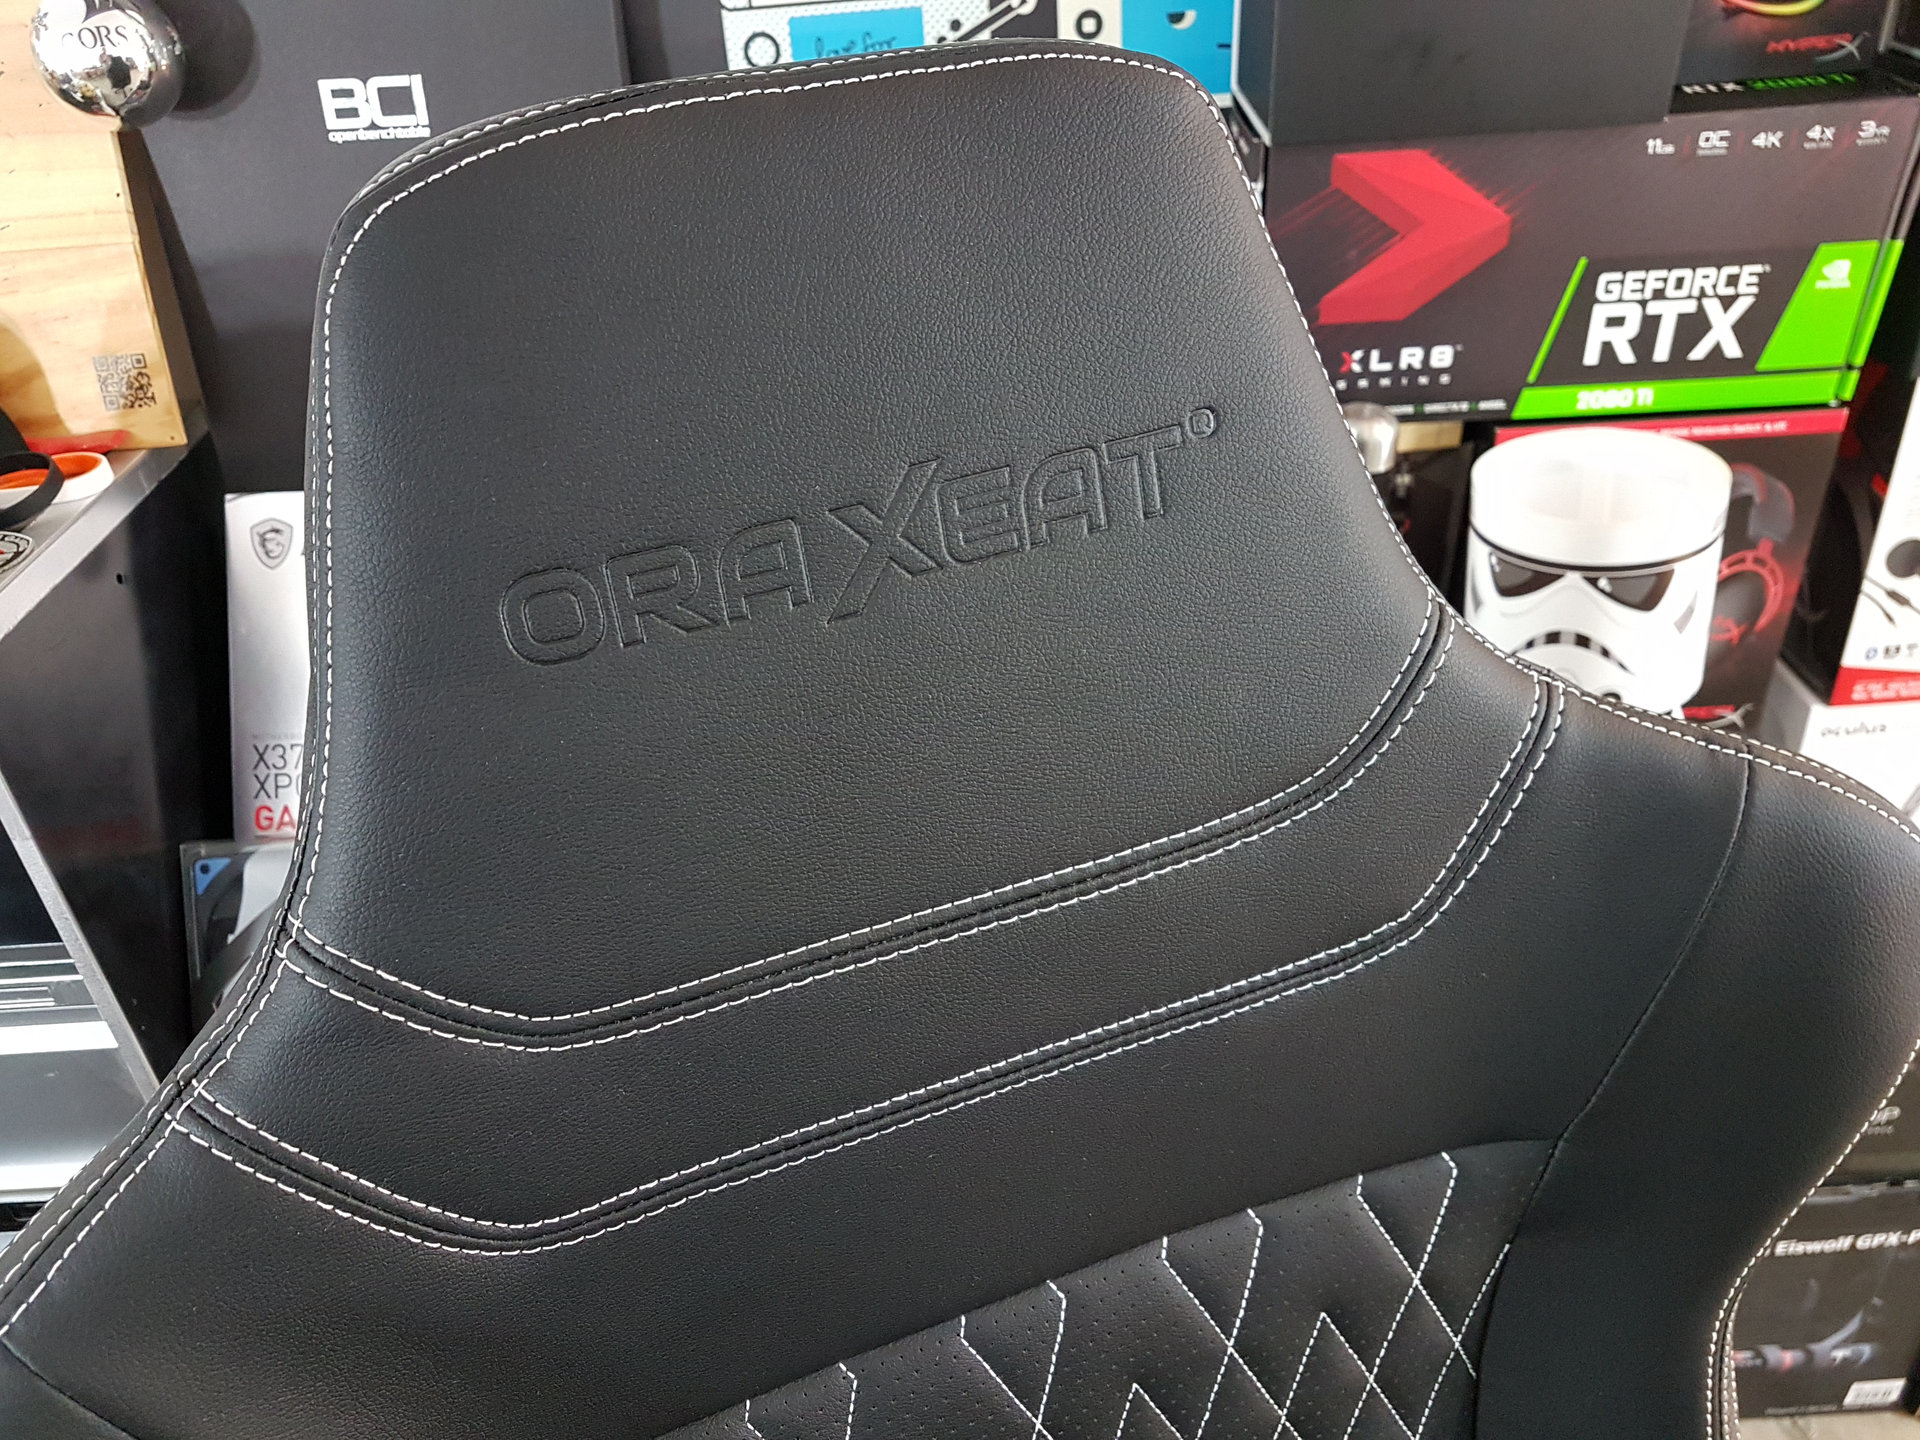 Image 15 : Test : Oraxeat XL800, enfin un fauteuil gaming pour les grands joueurs